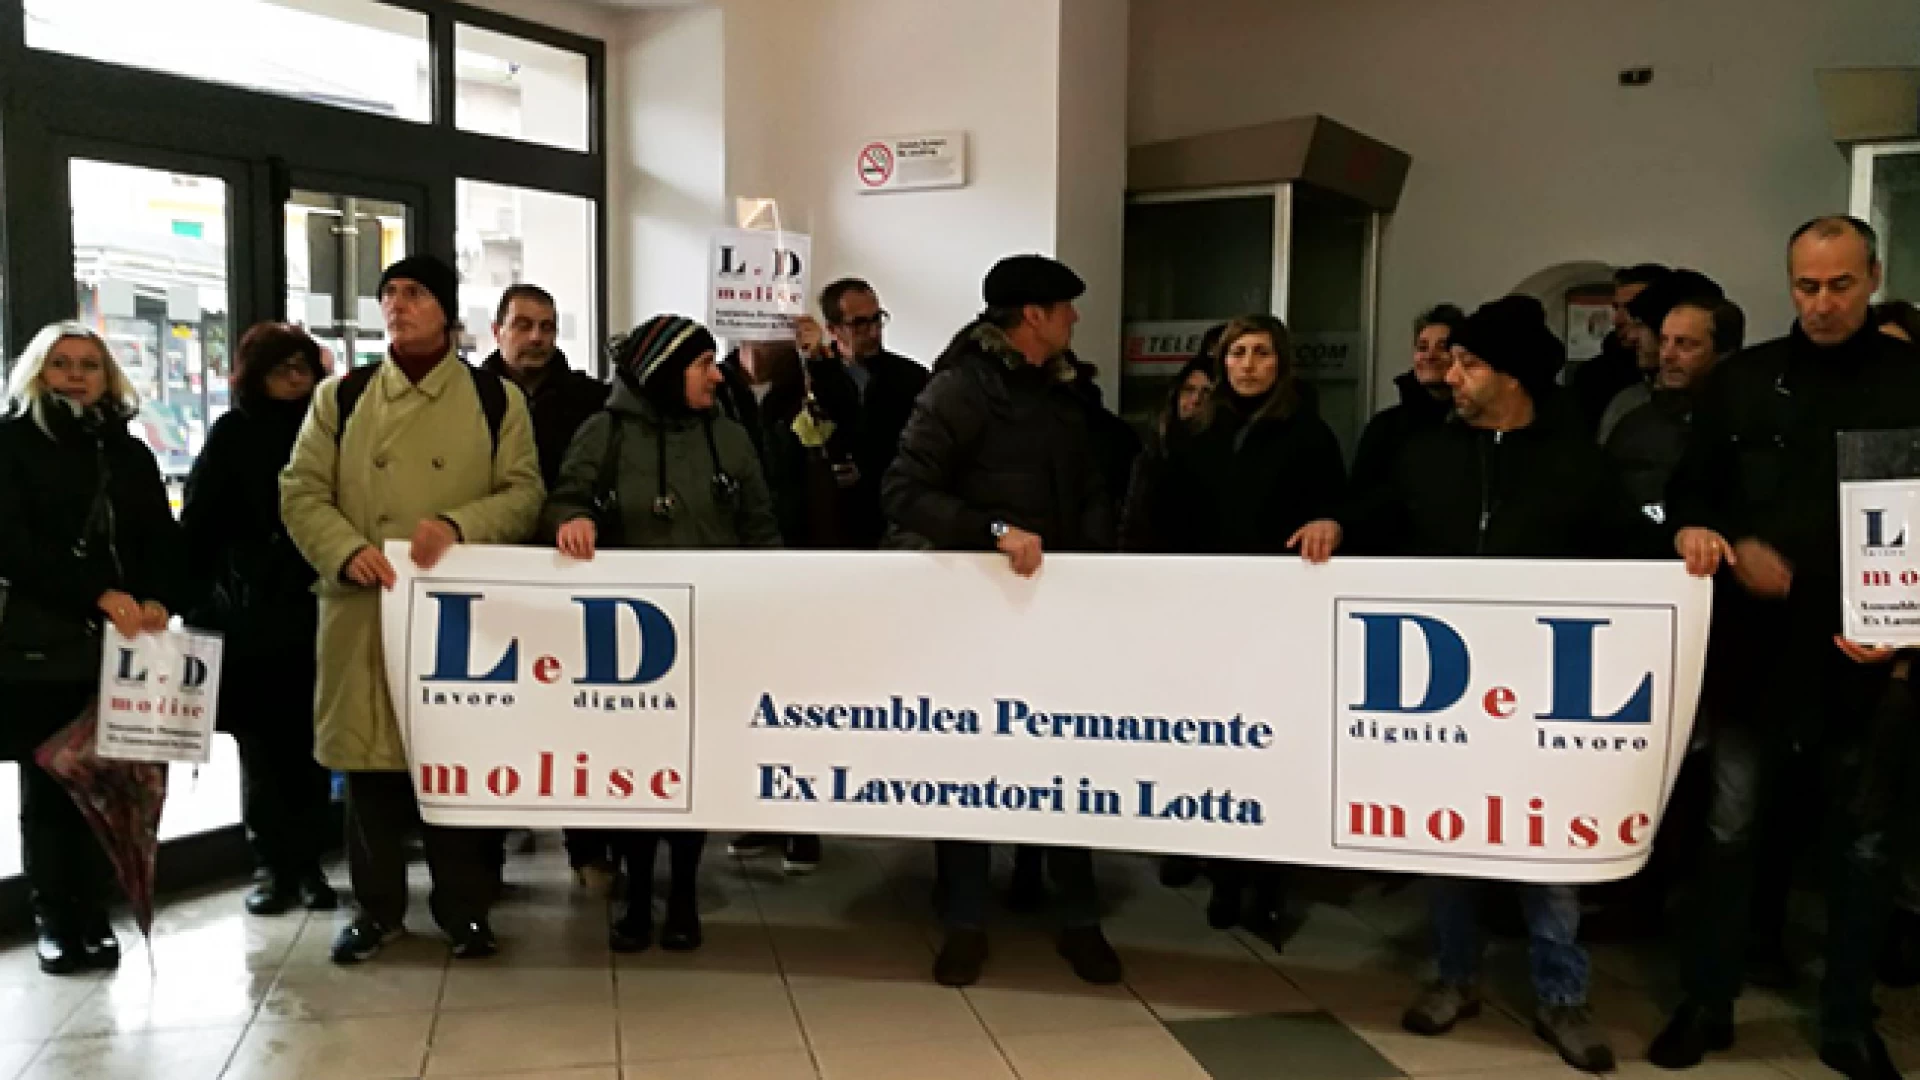 “Che il Direttore Palmieri protesti con noi in difesa dei posti di lavoro” . Lo aspettiamo sotto il palazzo regionale. Così Emilio Izzo a sostegno dei disoccupati.